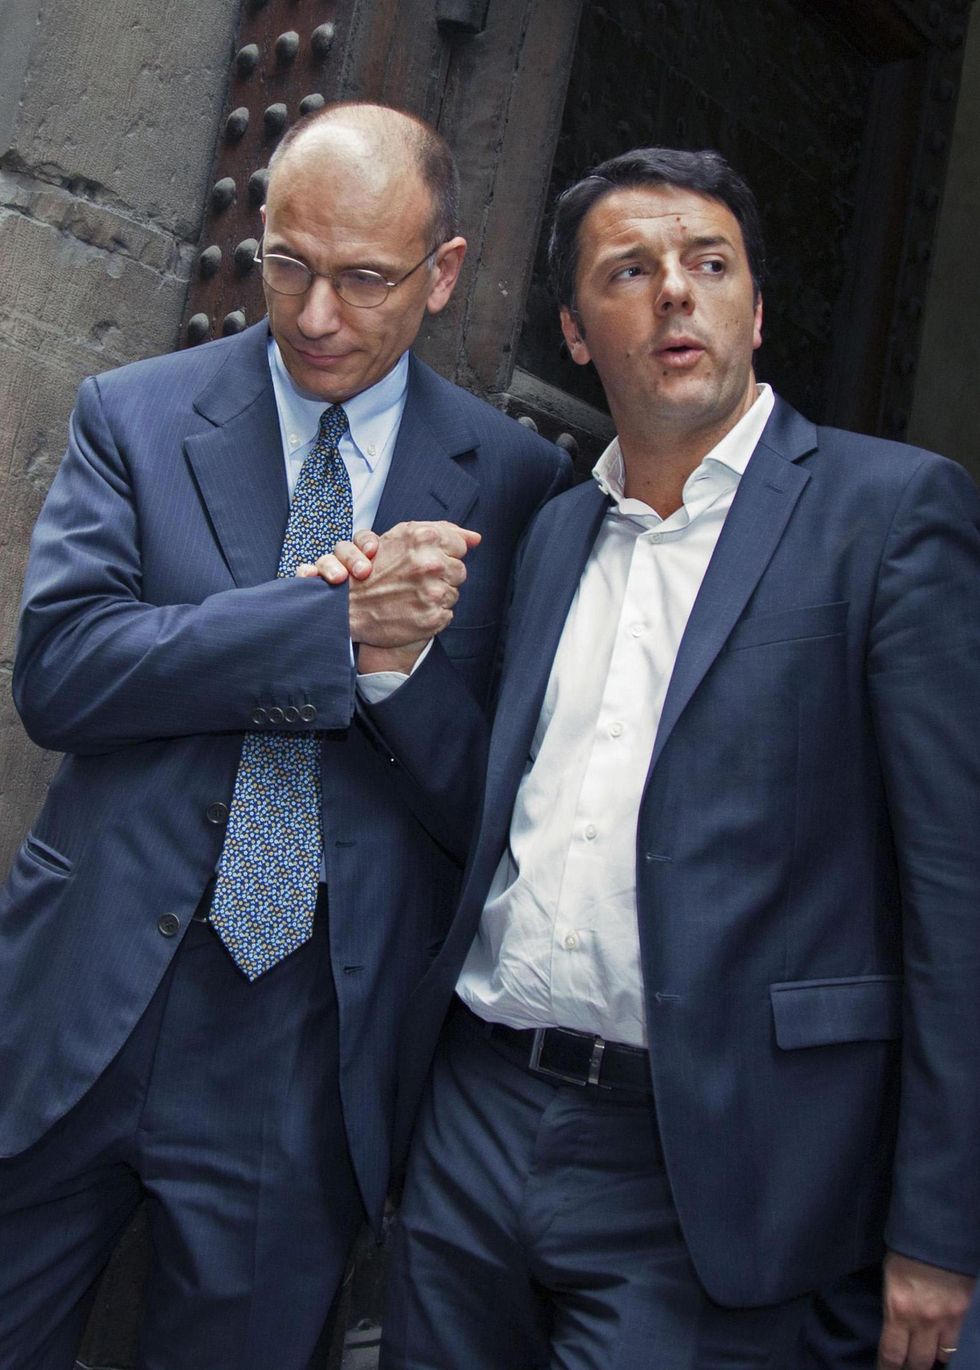 Rottamazione compiuta: nel Pd la sfida è tra Renzi e Letta